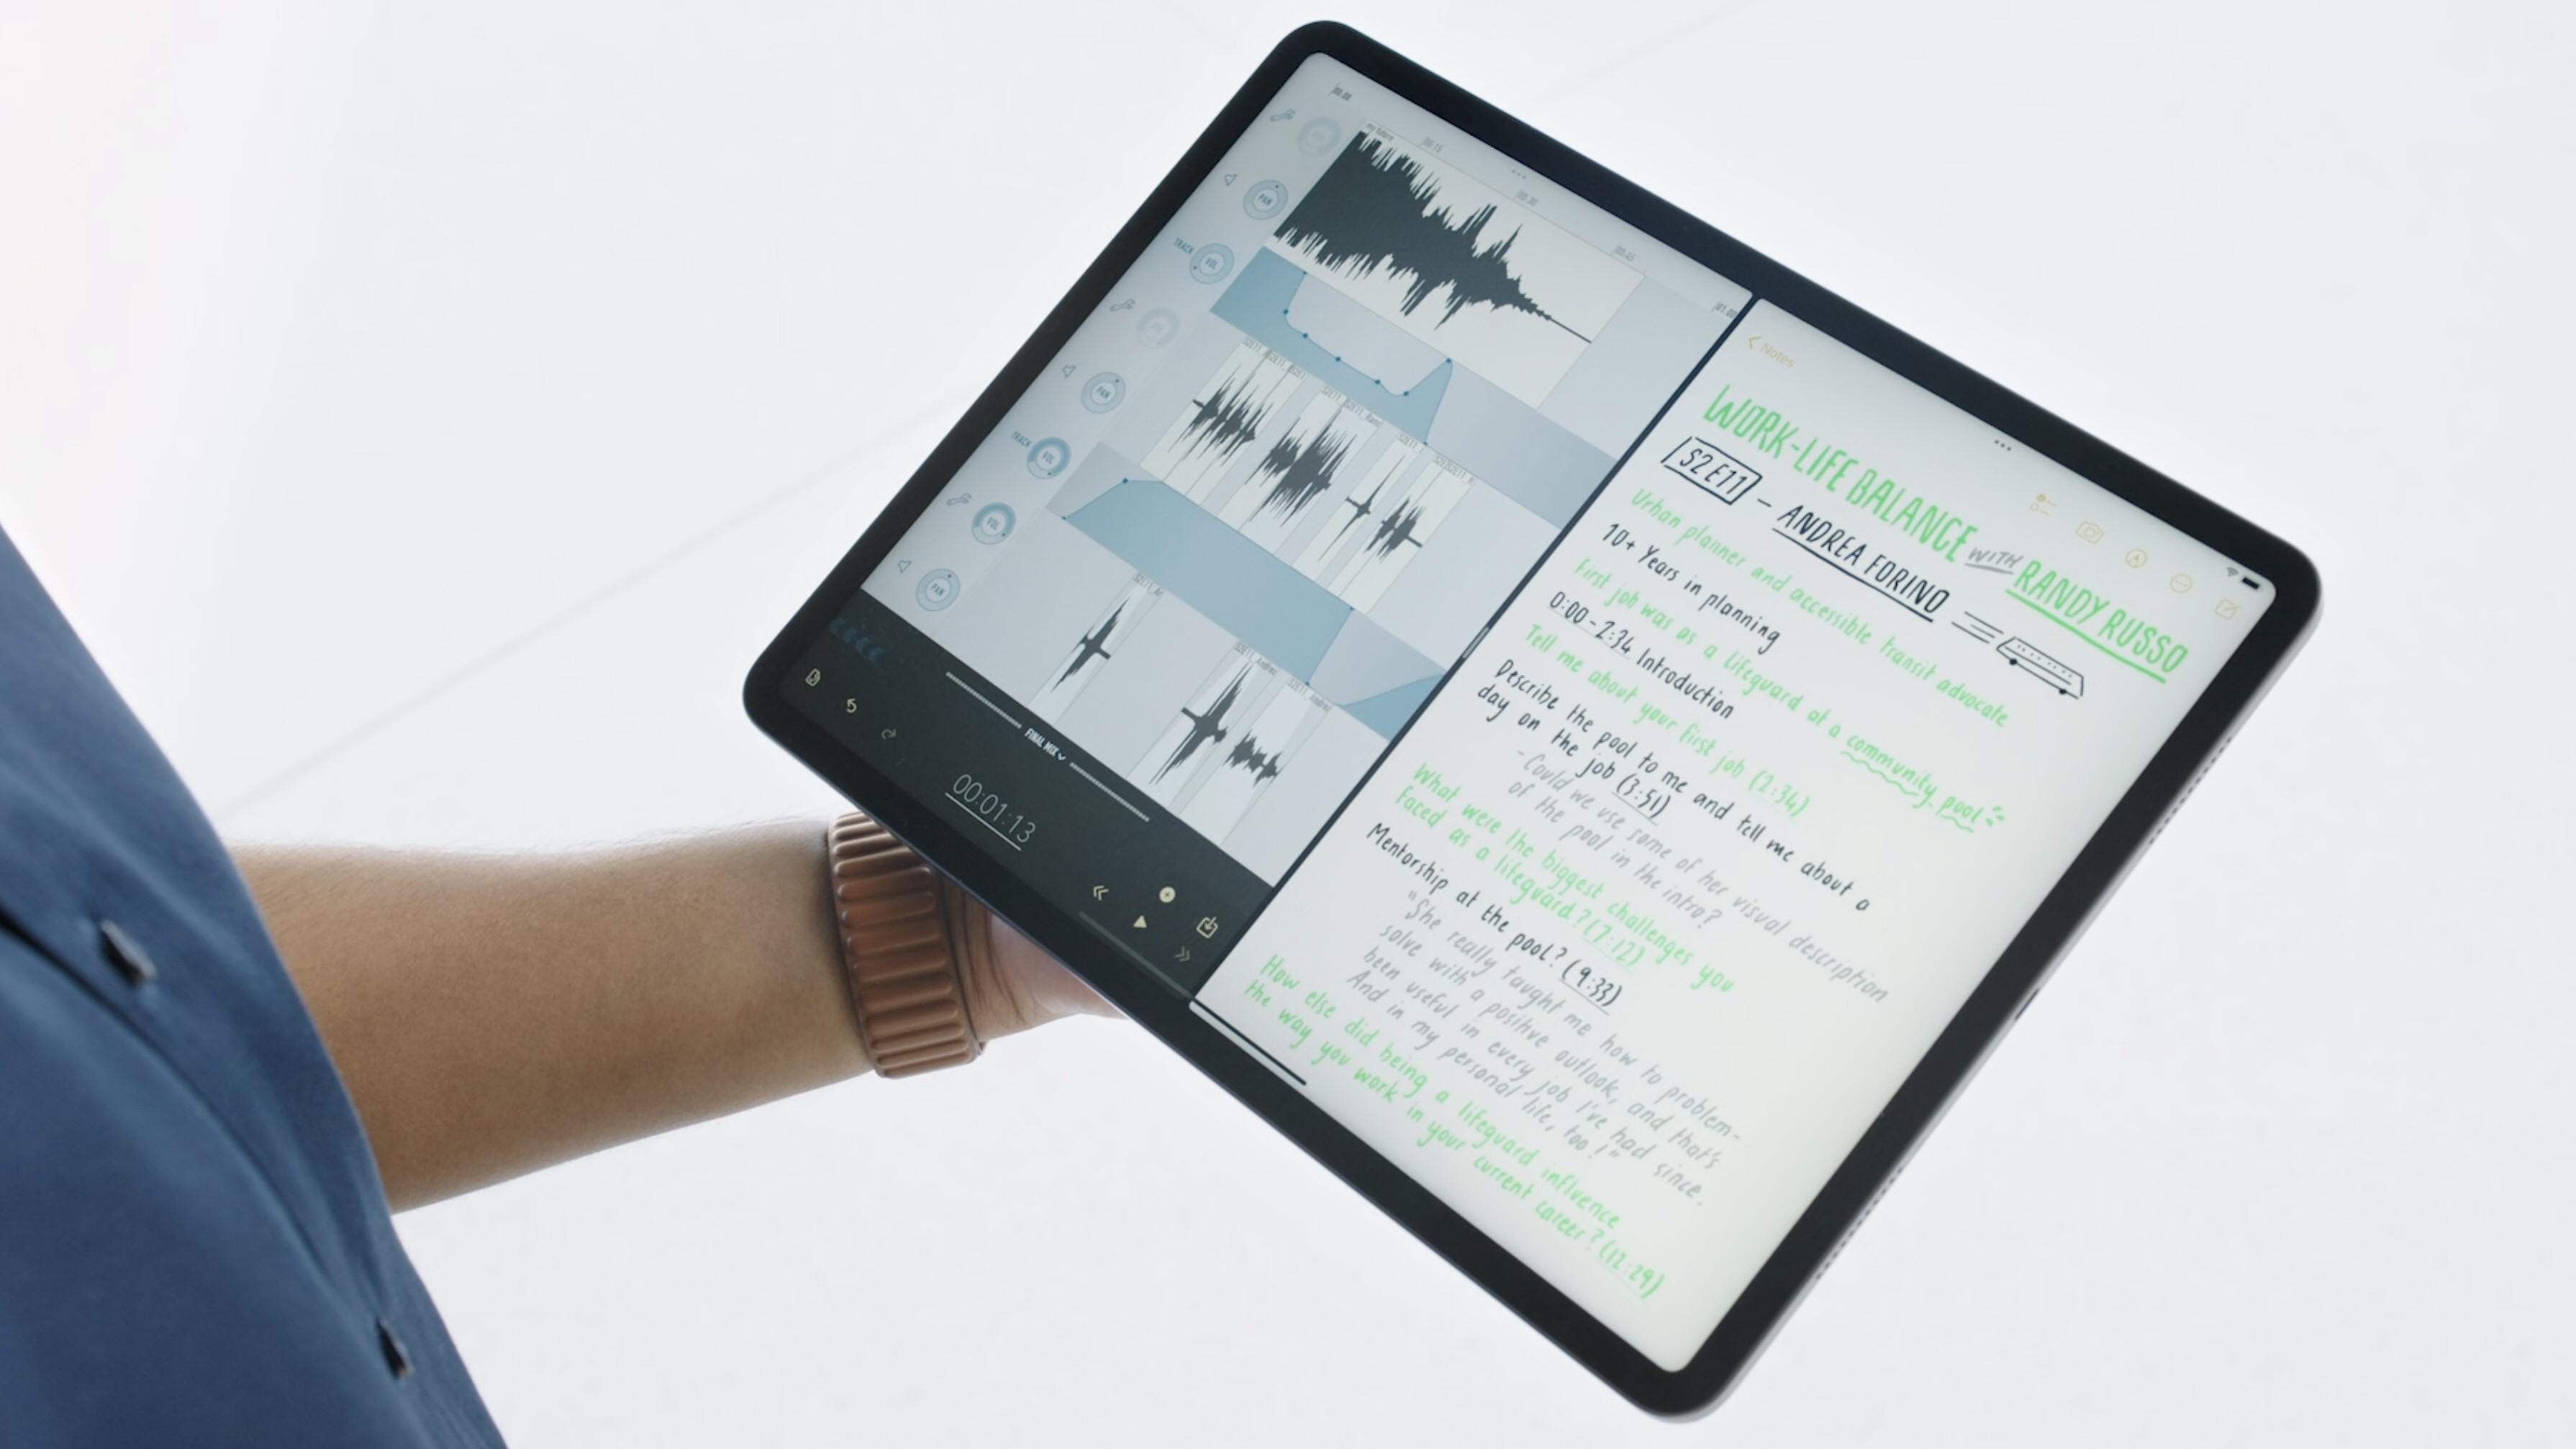 Delt skjerm på iPad skal kunne gjøre det enklere å jobbe med flere ting samtidig.